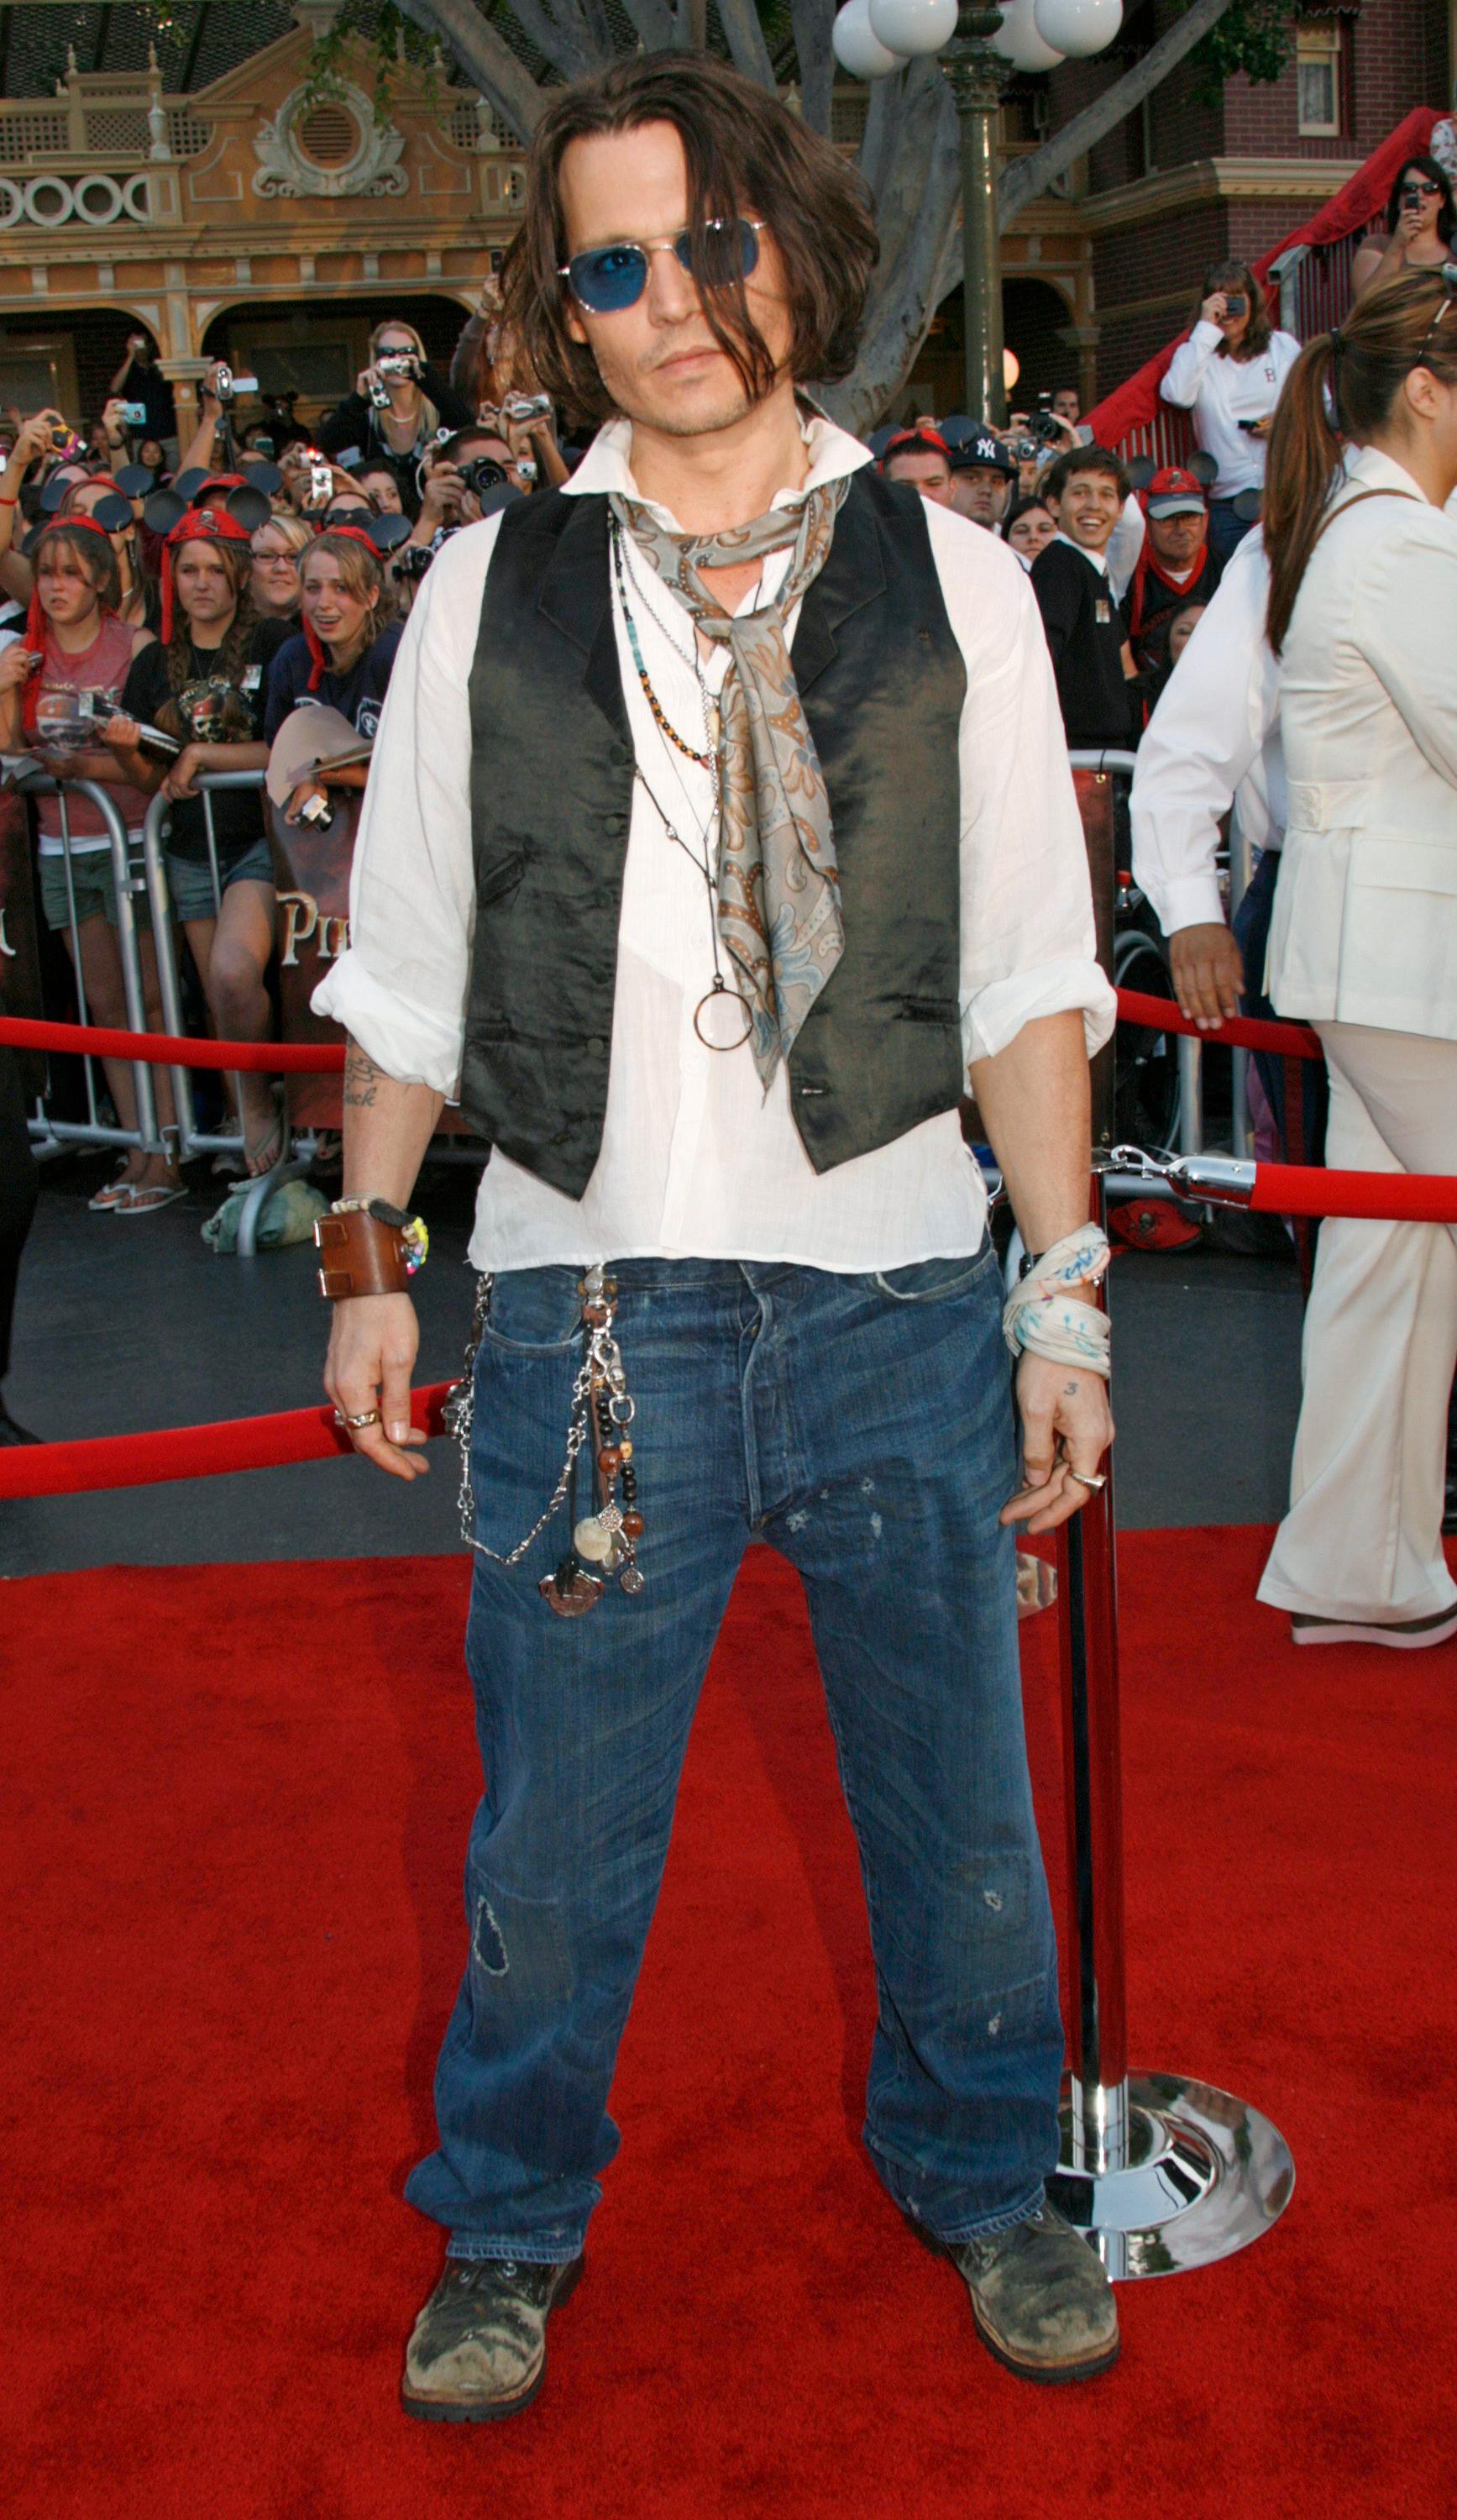 MORE IS MORE: Når Johnny Depp skal kle seg for et event, kjører han gjerne på med en rekke plagg og tilbehør i lag på lag.